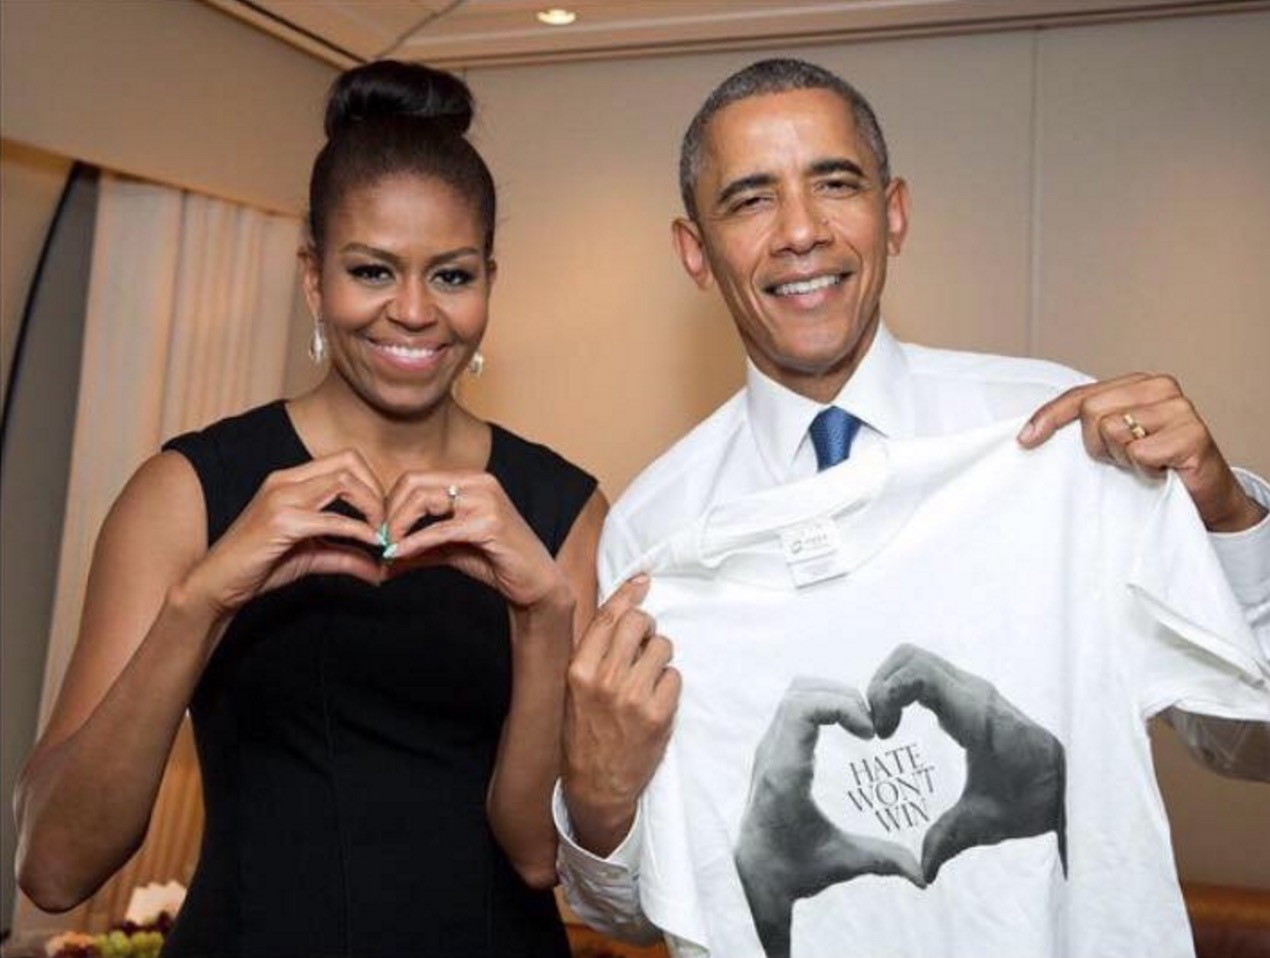 Alana ha lanzado una campaña para difundir el amor en lugar del odio. Obama apoya esta iniciativa.